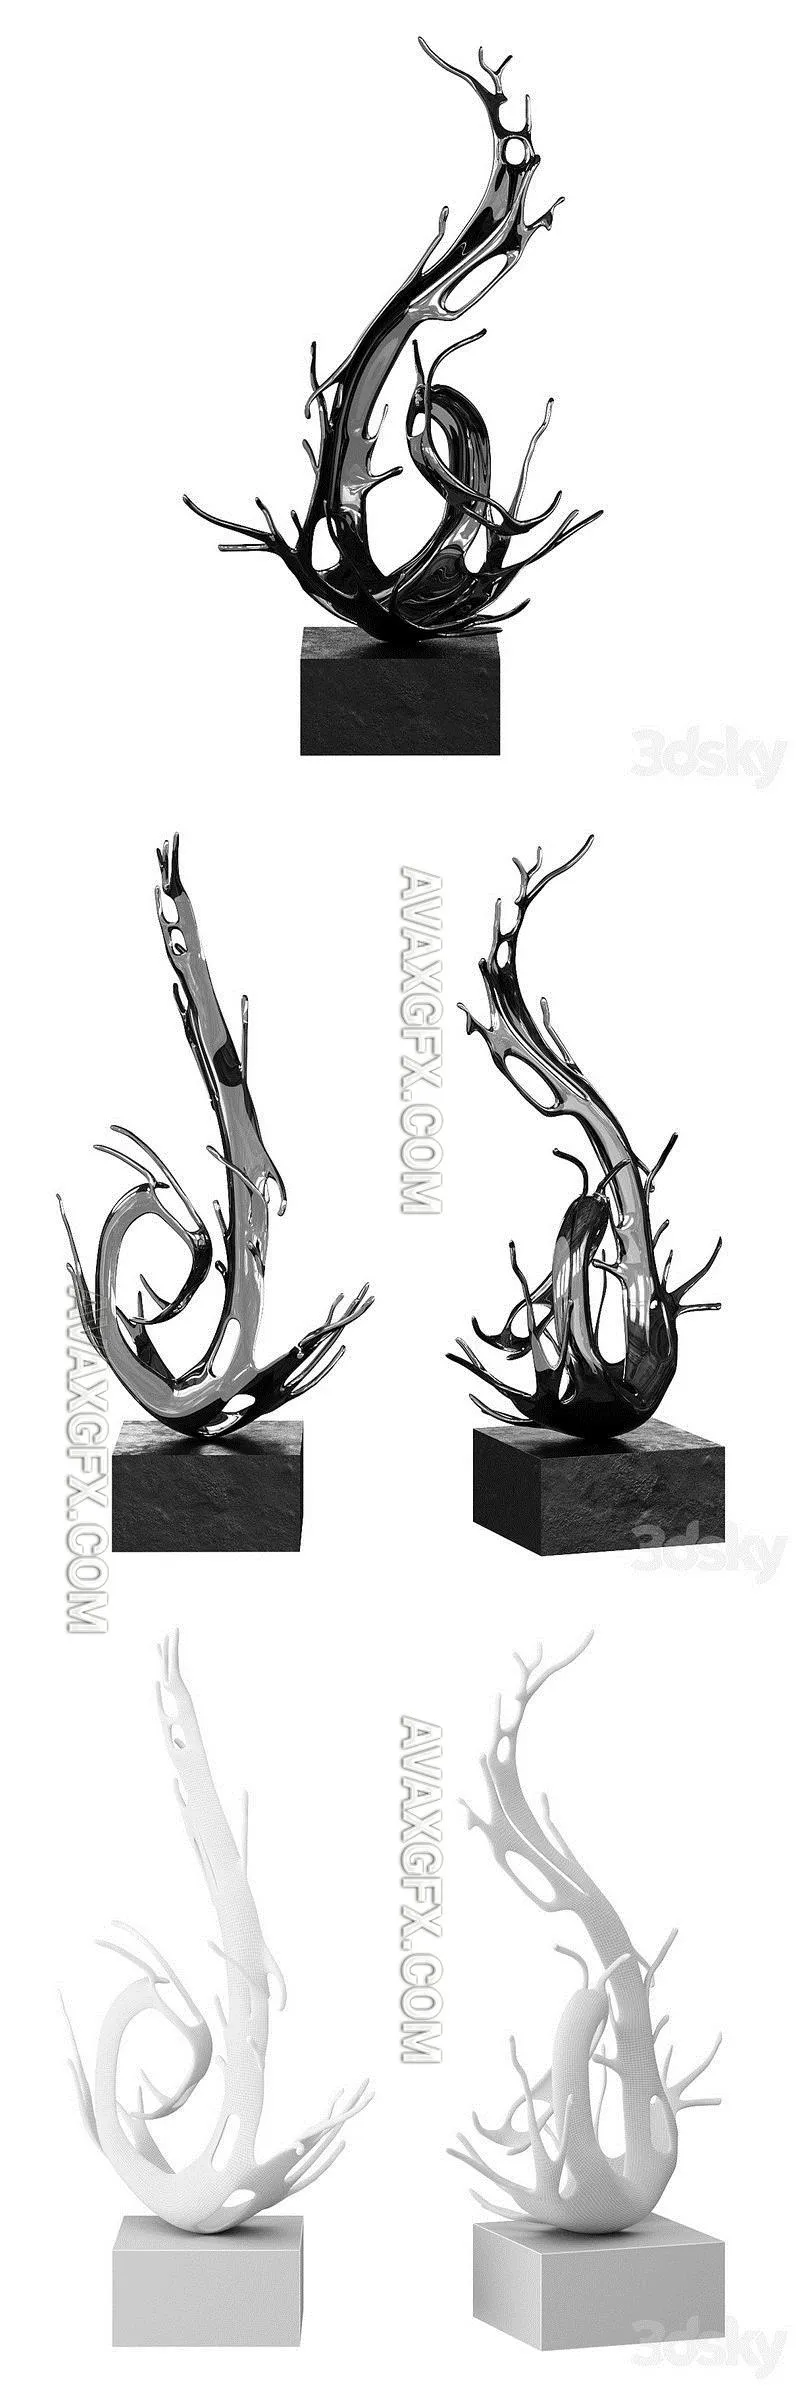 Zheng lu Yan Fei Sculpture - 3D Model